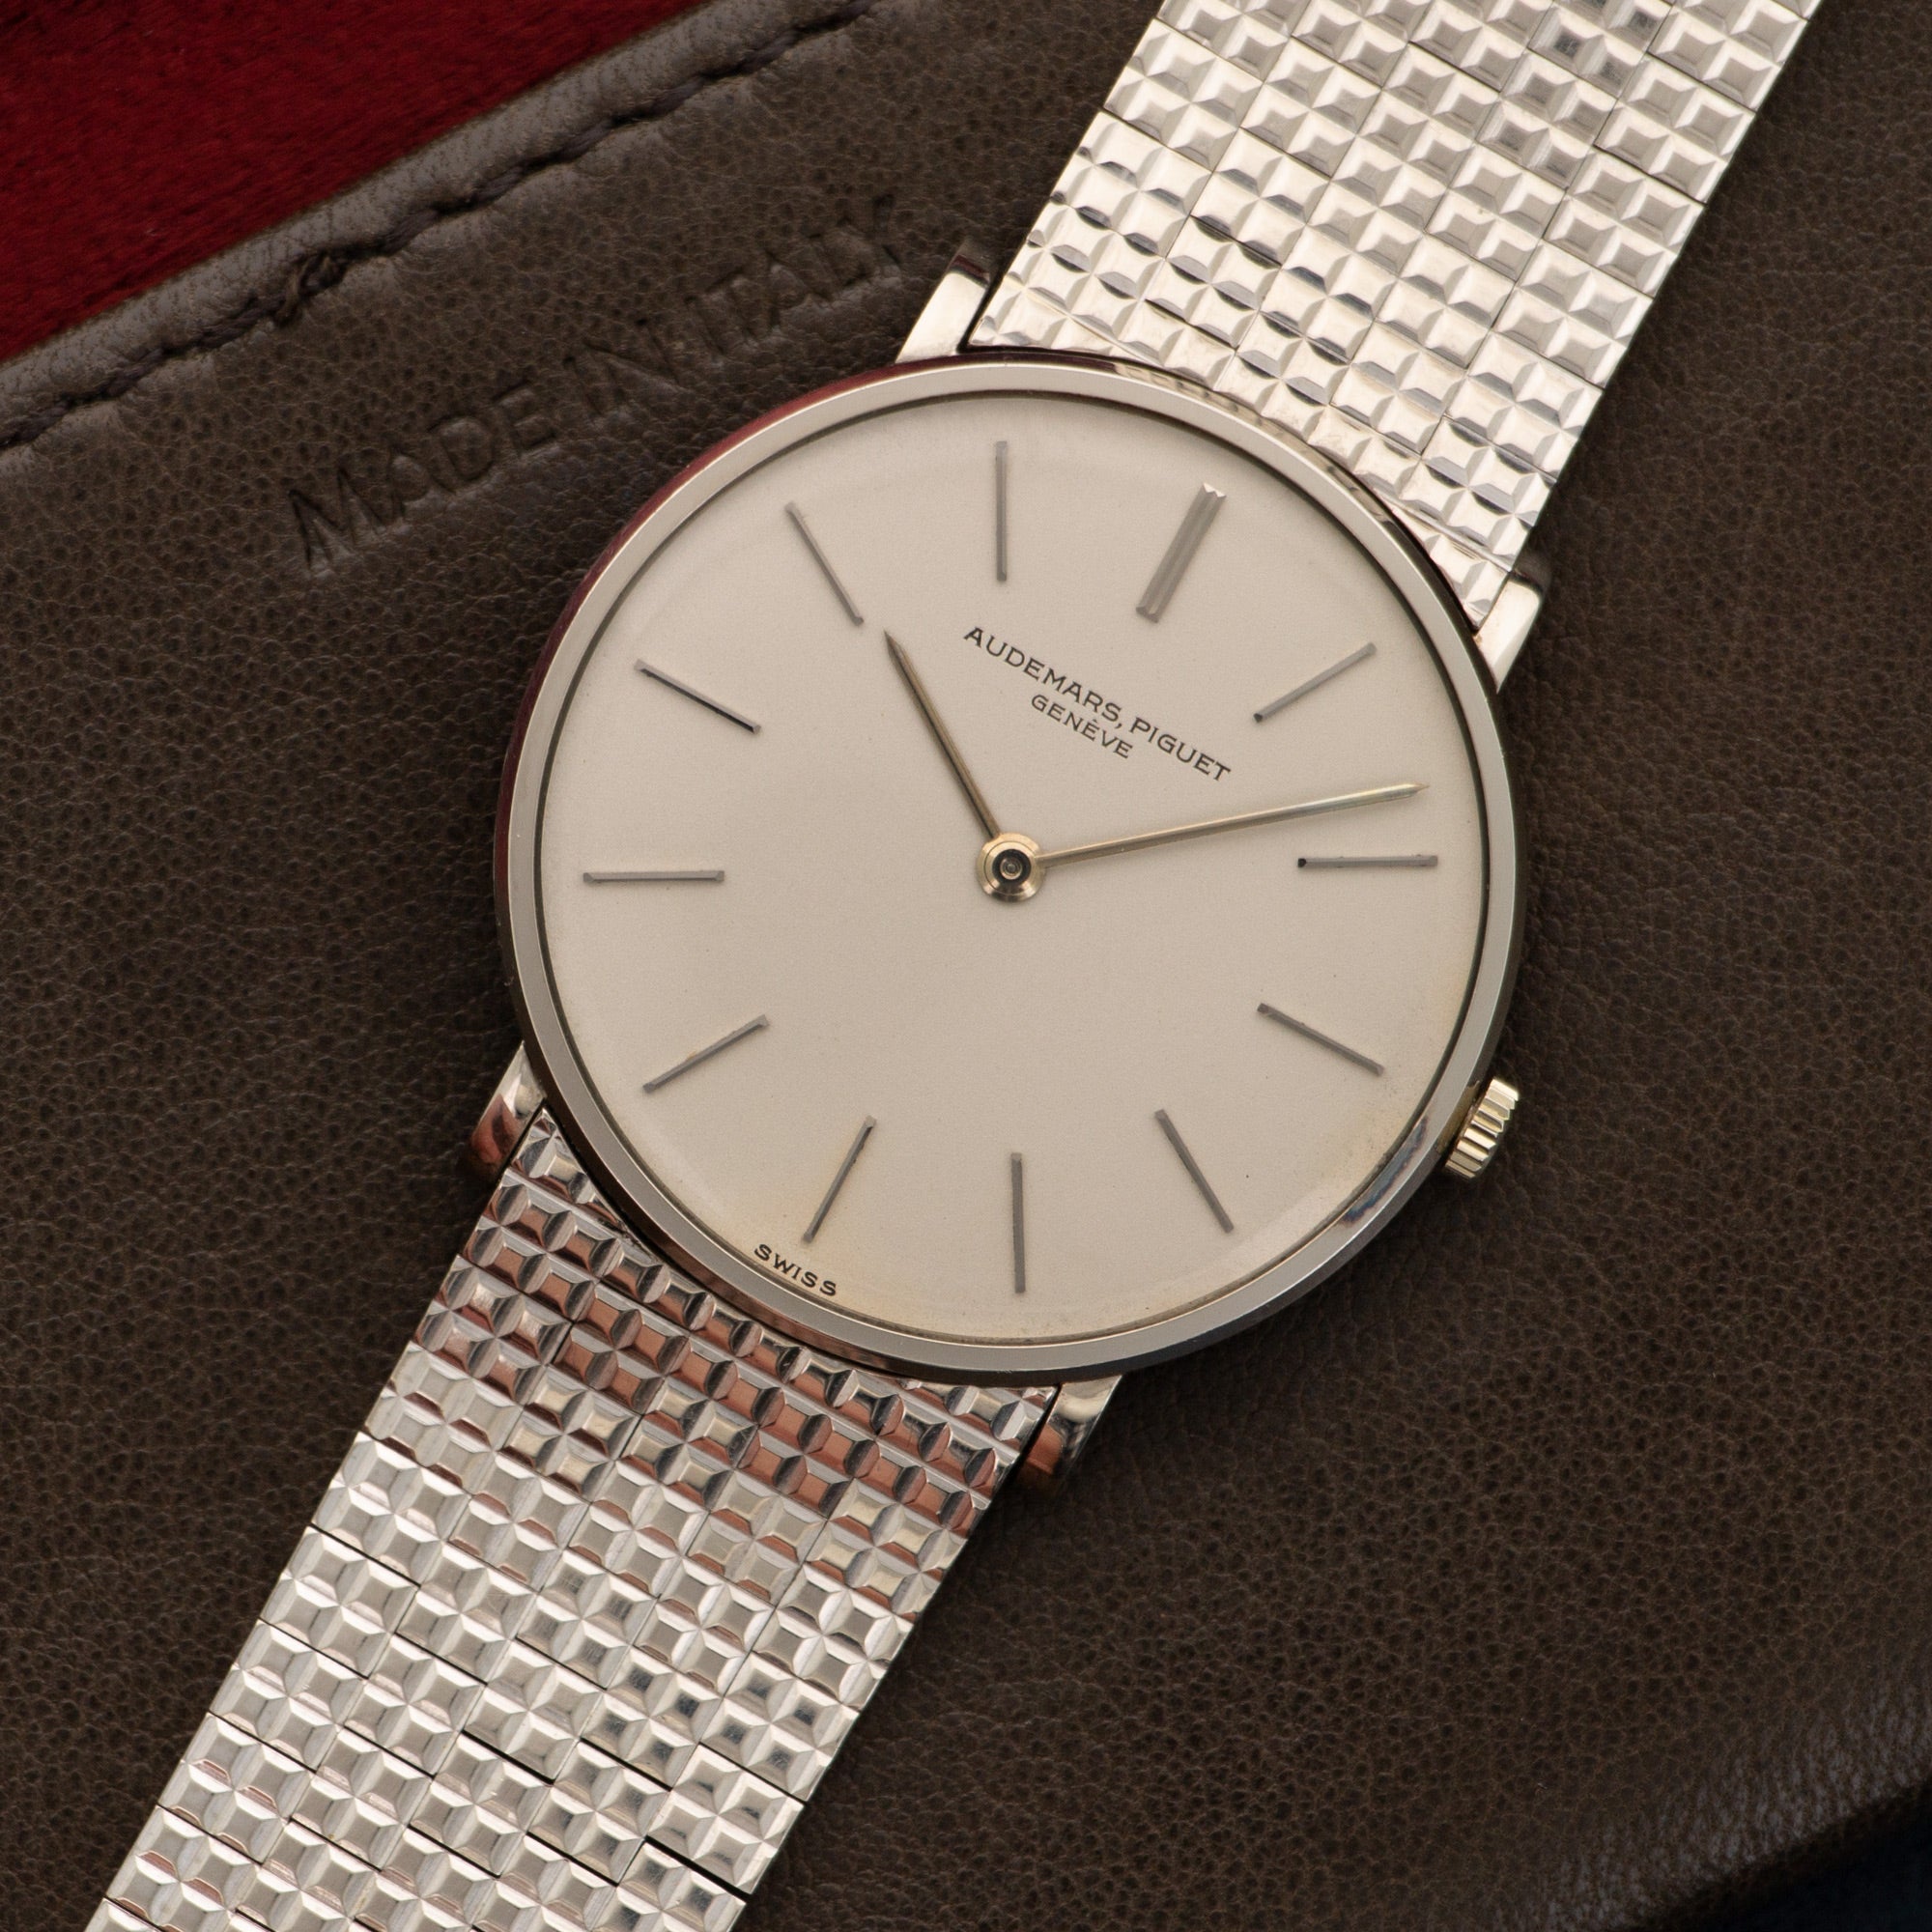 Audemars Piguet - Audemars Piguet White Gold Ultra-Thin Bracelet Watch - The Keystone Watches